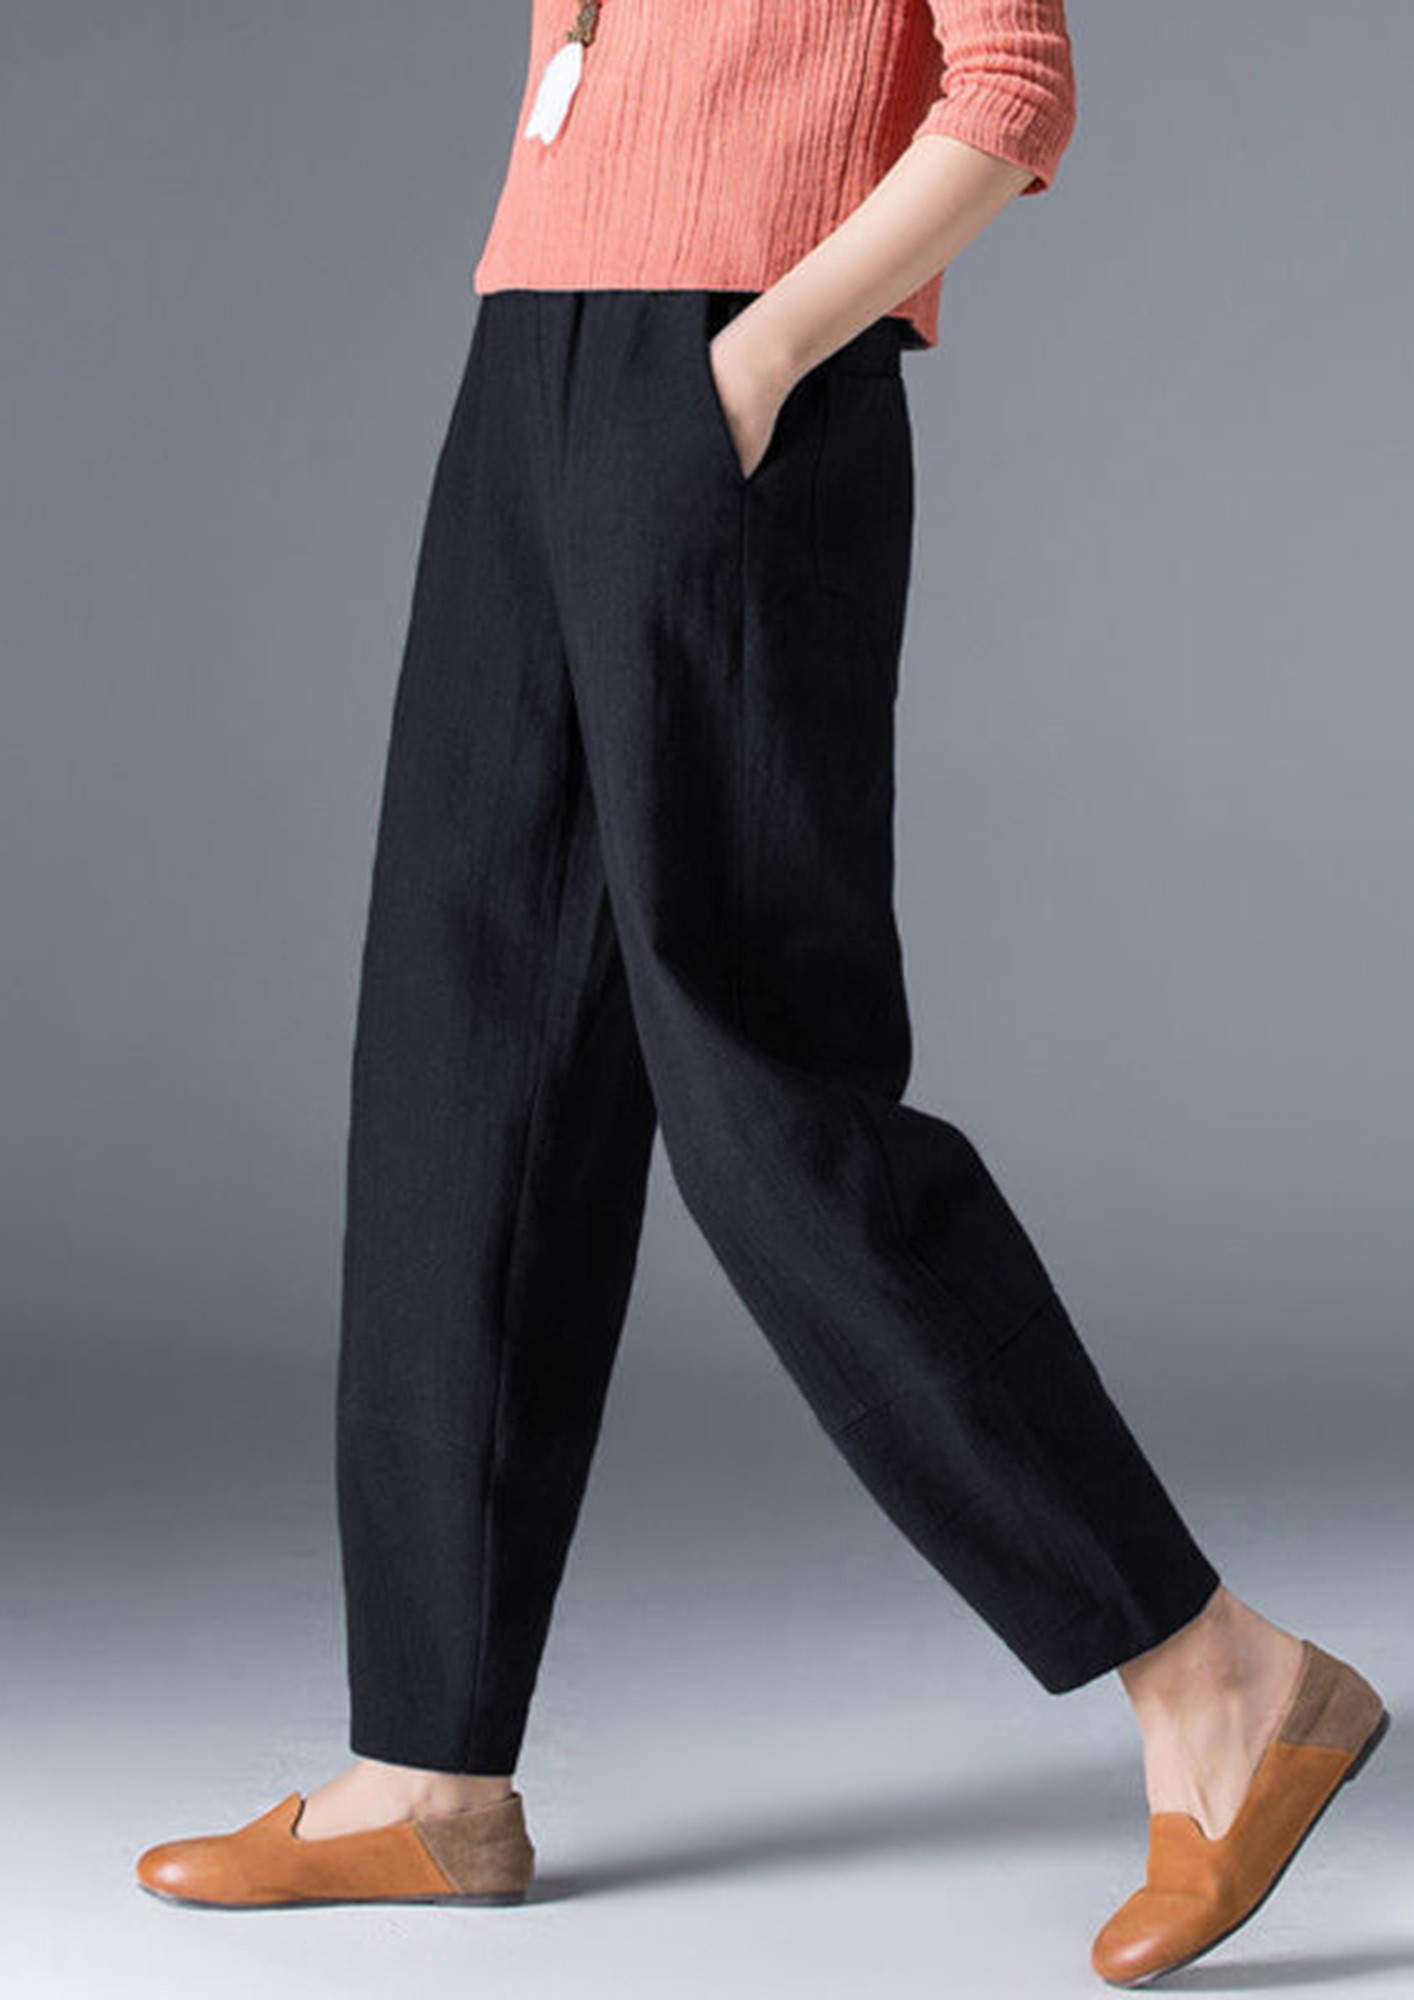 Linen Clothing for Women - 100% Linen Pants & Dresses - Lulus